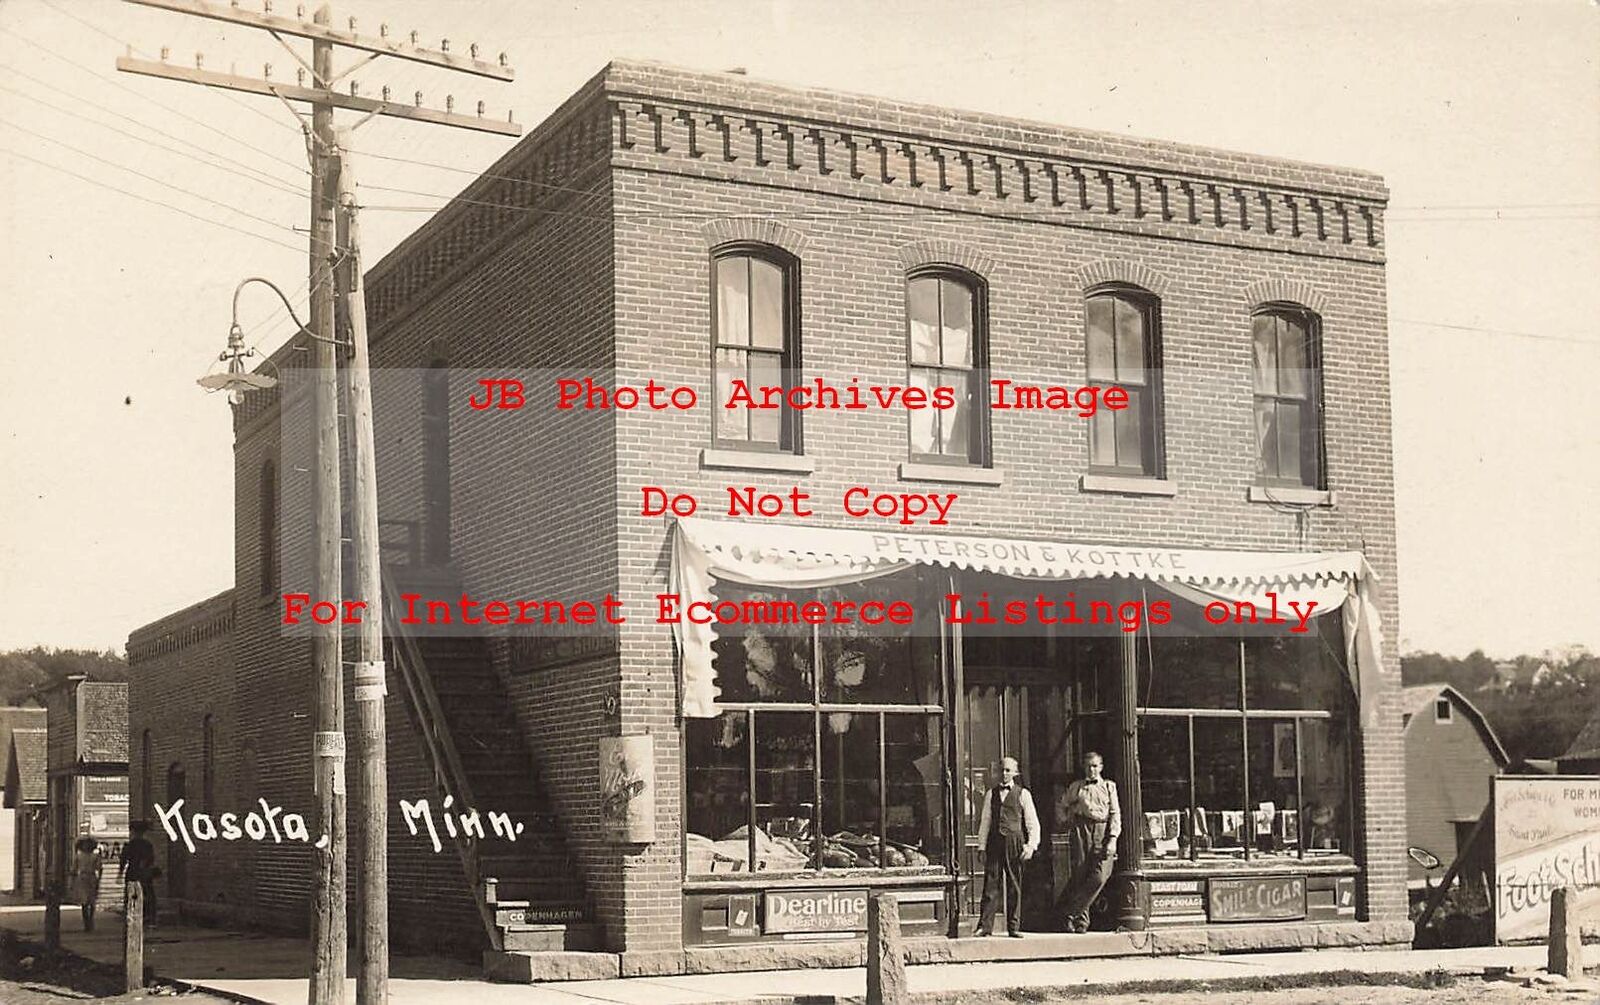 MN, Kasota, Minnesota, RPPC, Peterson & Kottke Store, 1913 PM, Photo